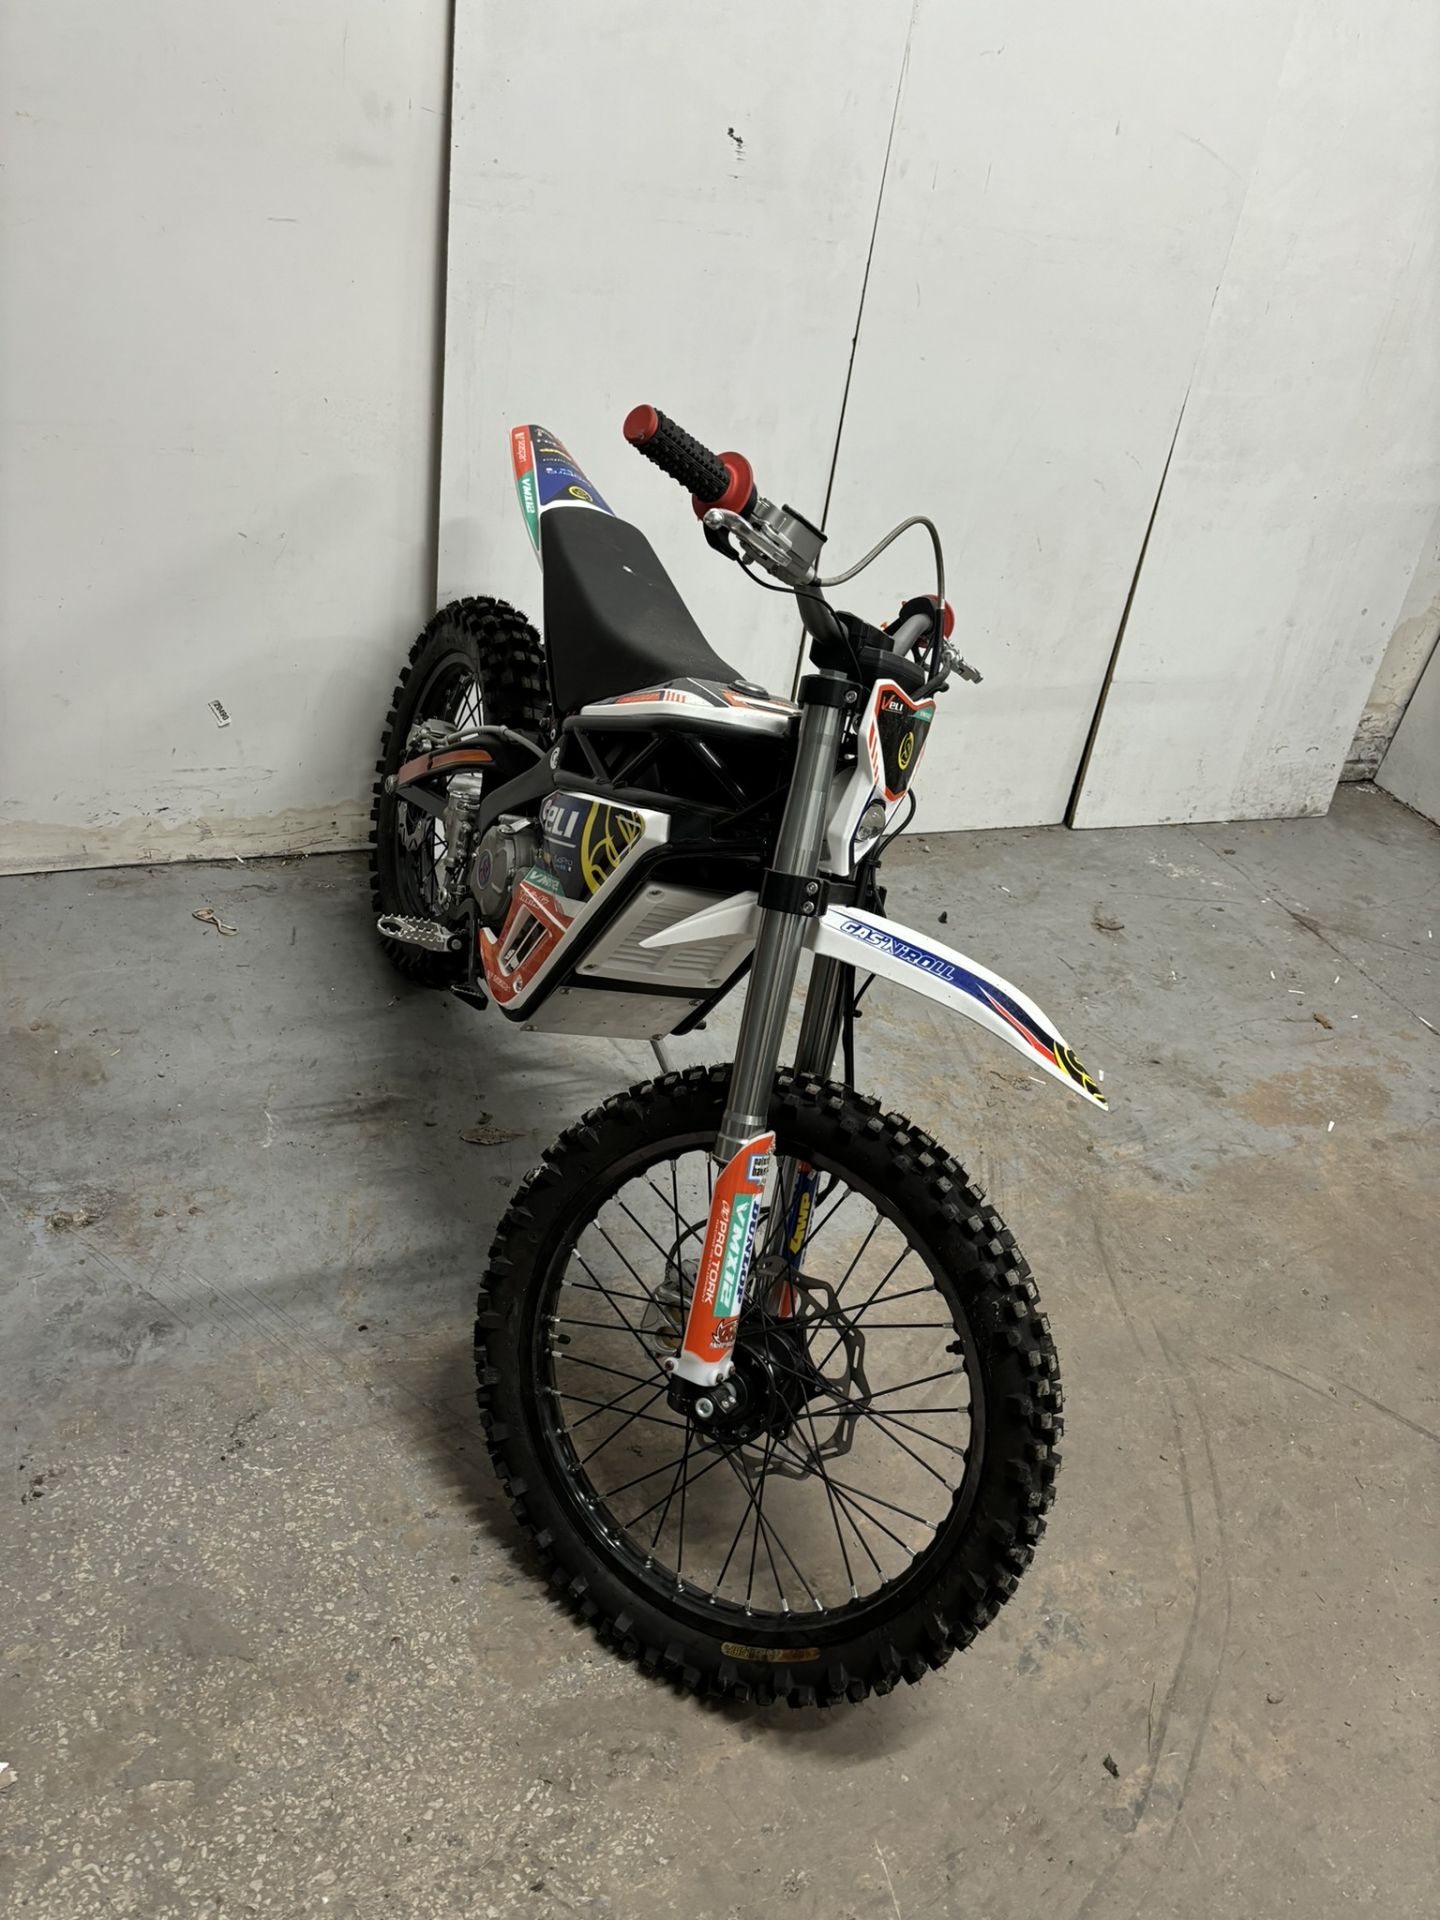 Velimotor VMX12 Electric Motorcycle / Dirt Bike - Image 7 of 24